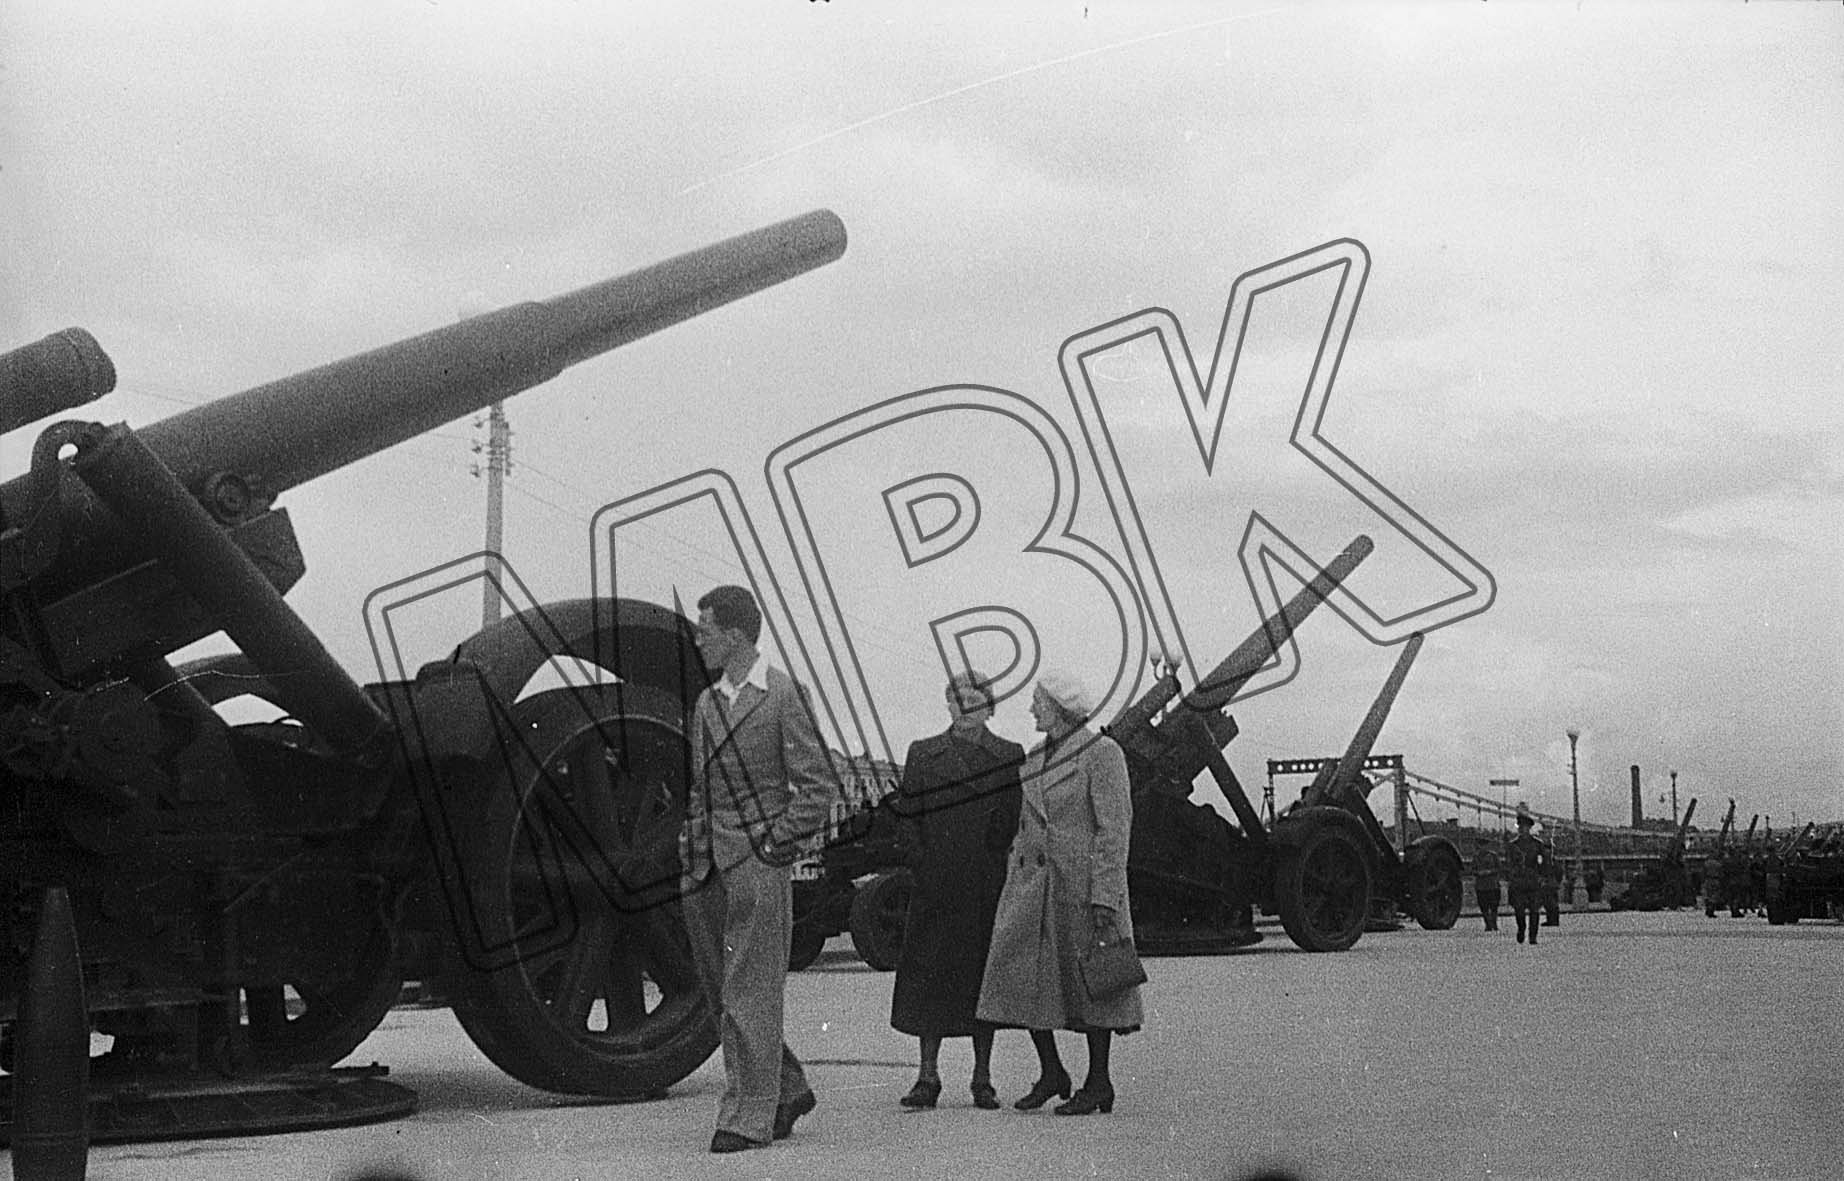 Fotografie: Präsentation deutscher Beutewaffen, Moskau, Juli 1943 (Museum Berlin-Karlshorst RR-P)